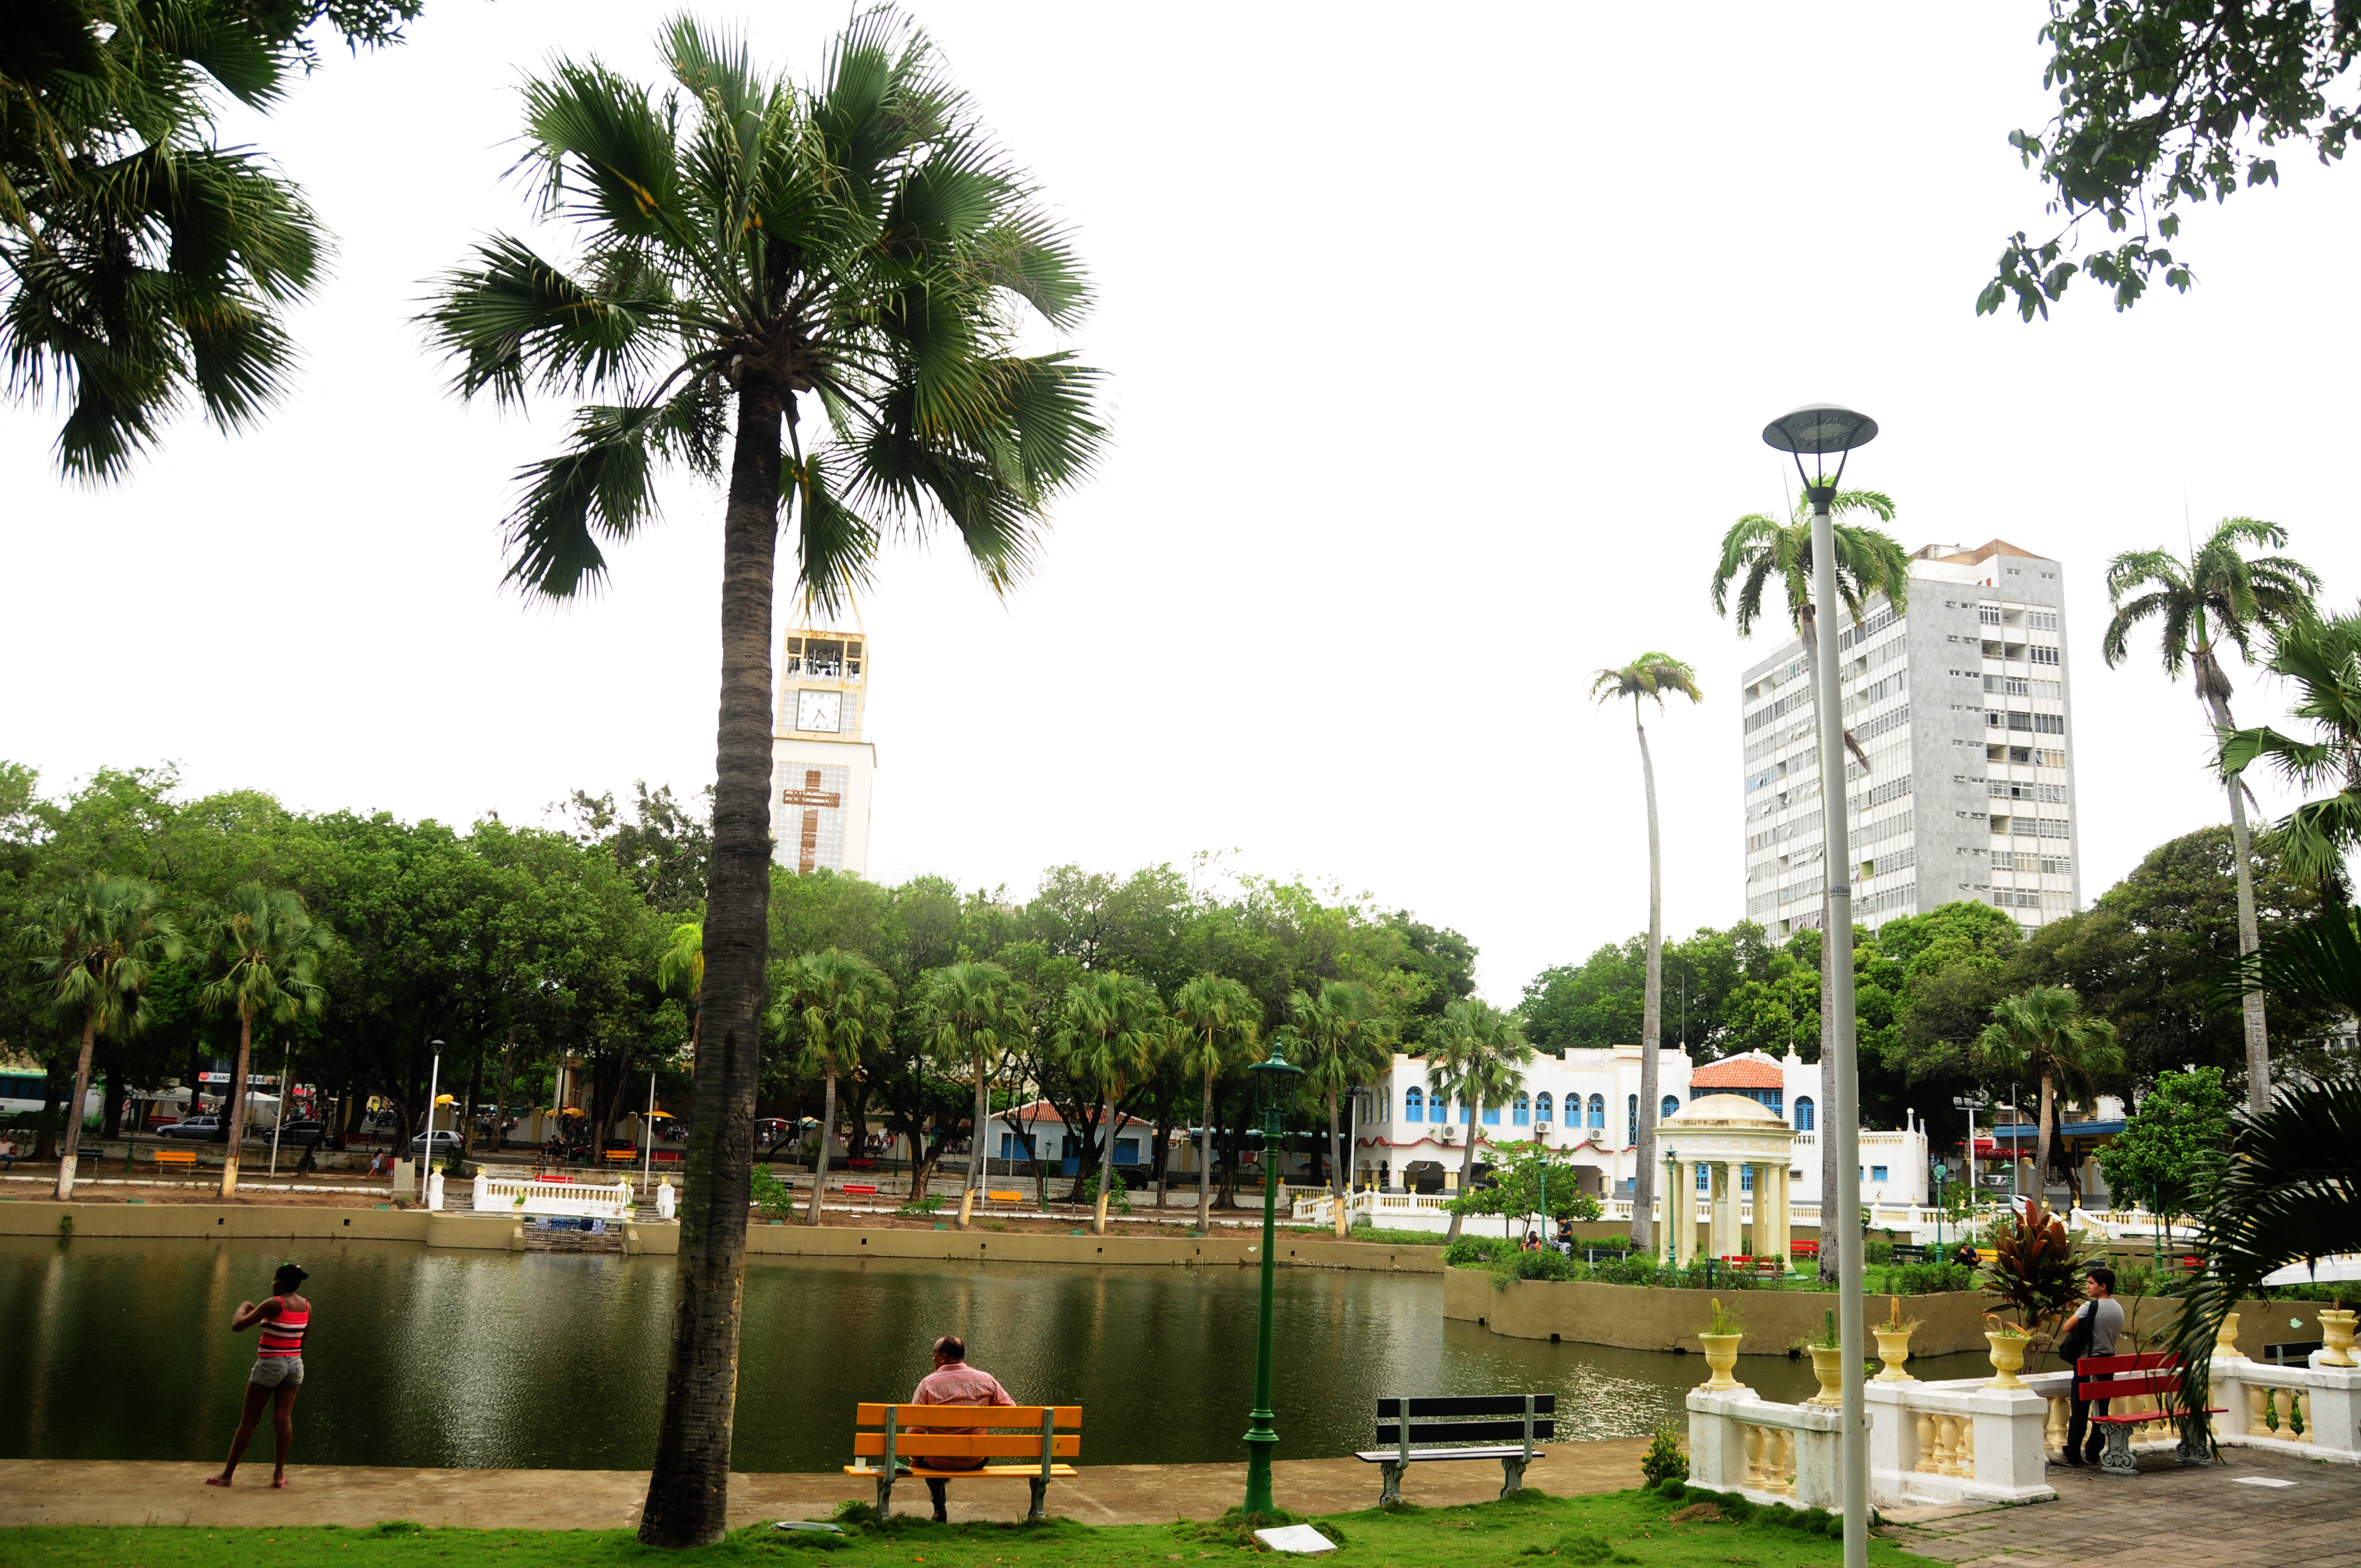 Foto mostra o interior do Parque das Crianças, com lagoa, árvores e bancos de madeira